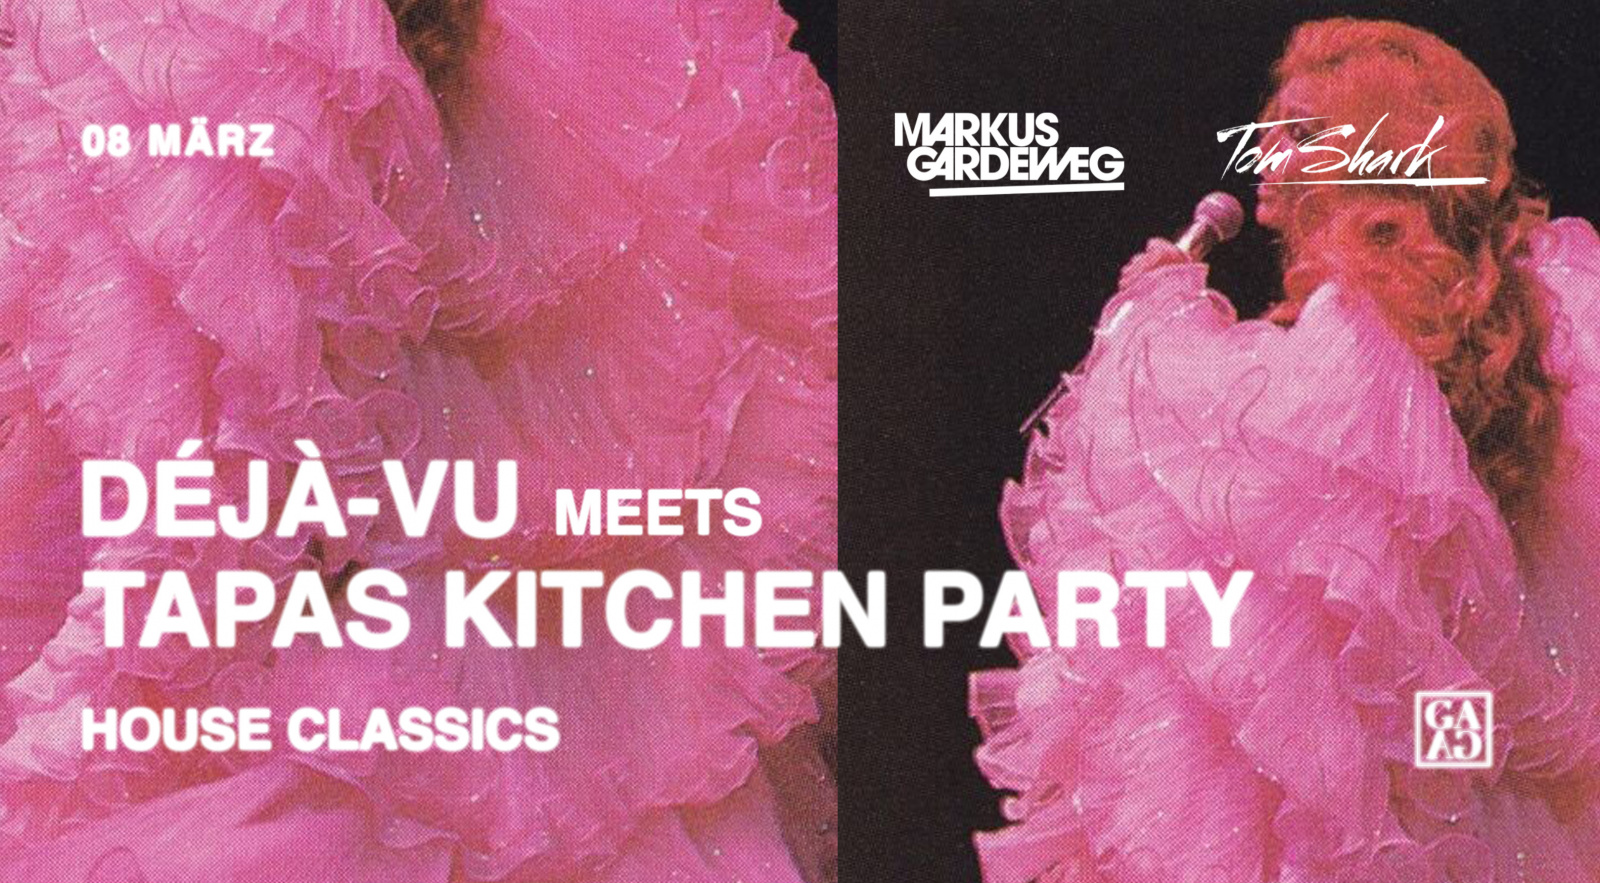 Déjà-Vu House Classics meets Tapas Kitchen Party